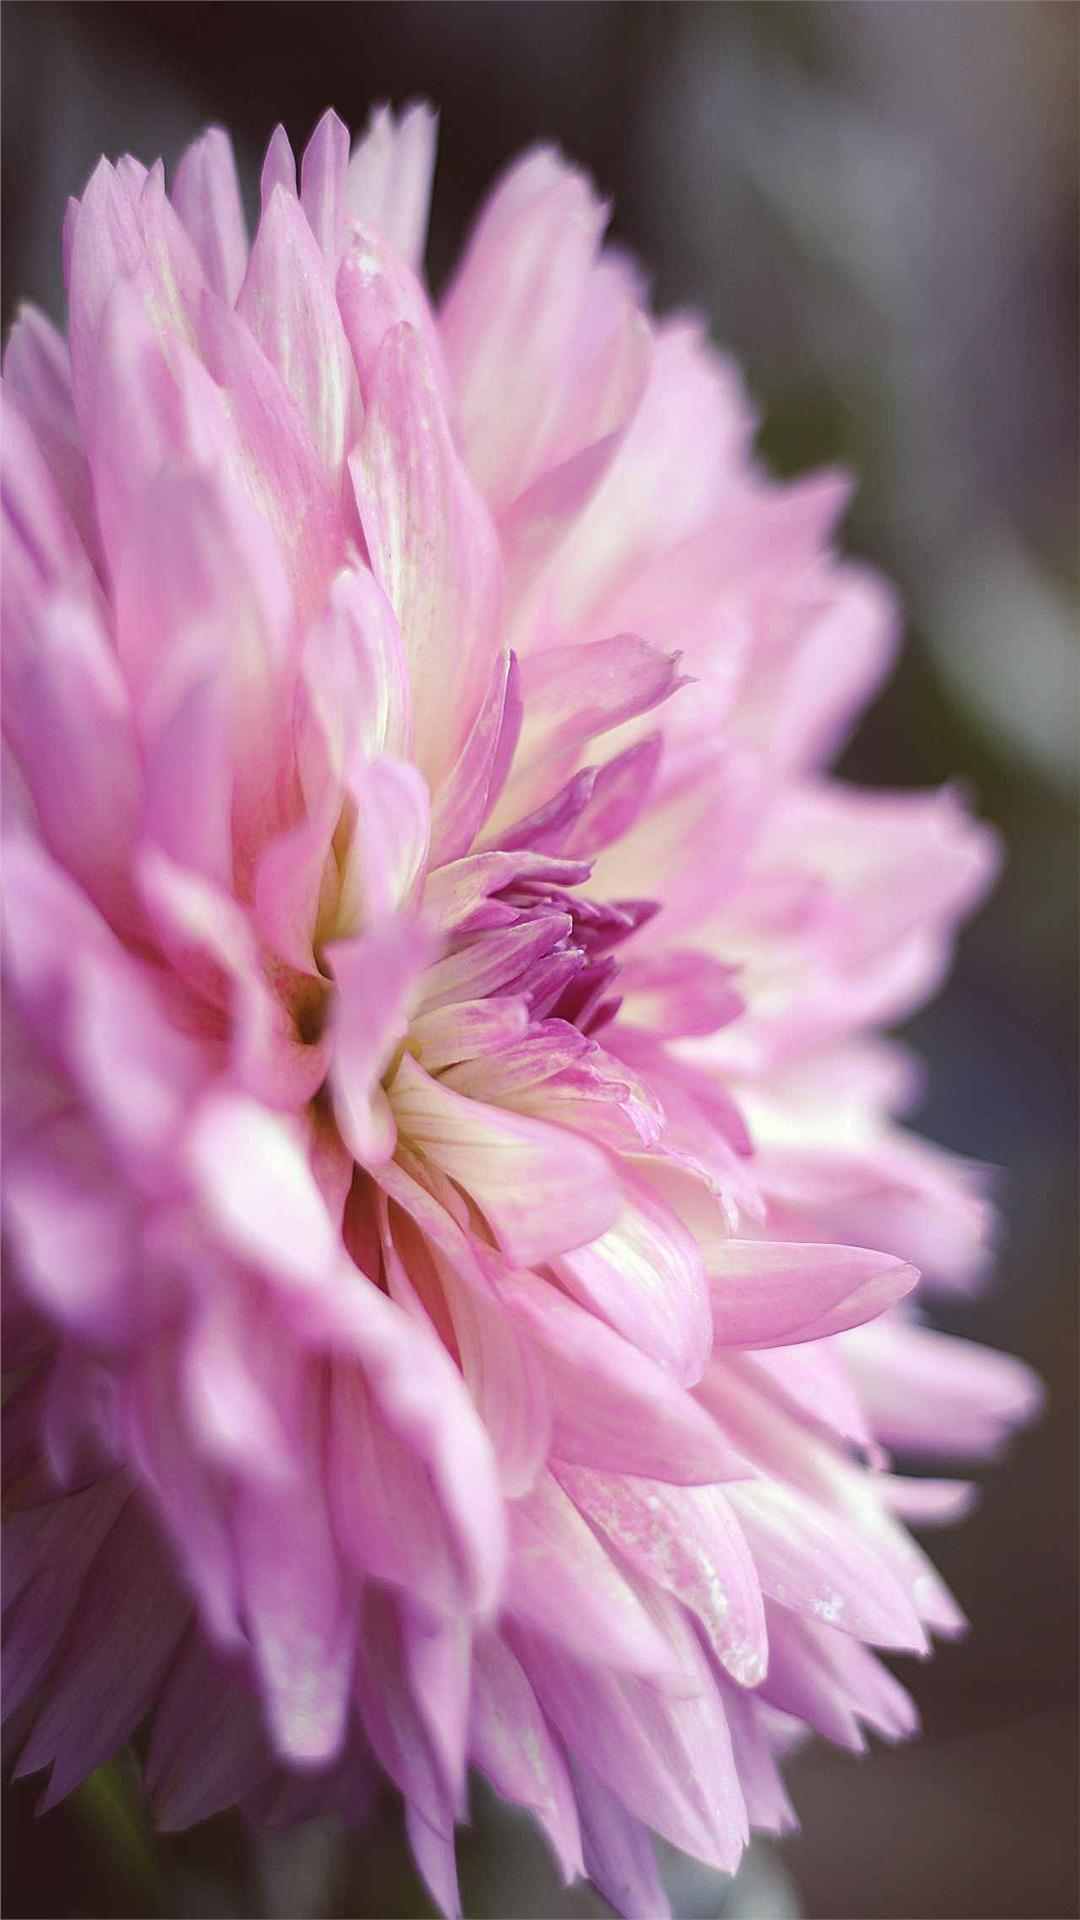 Dahlia Flower iPhone Wallpaper